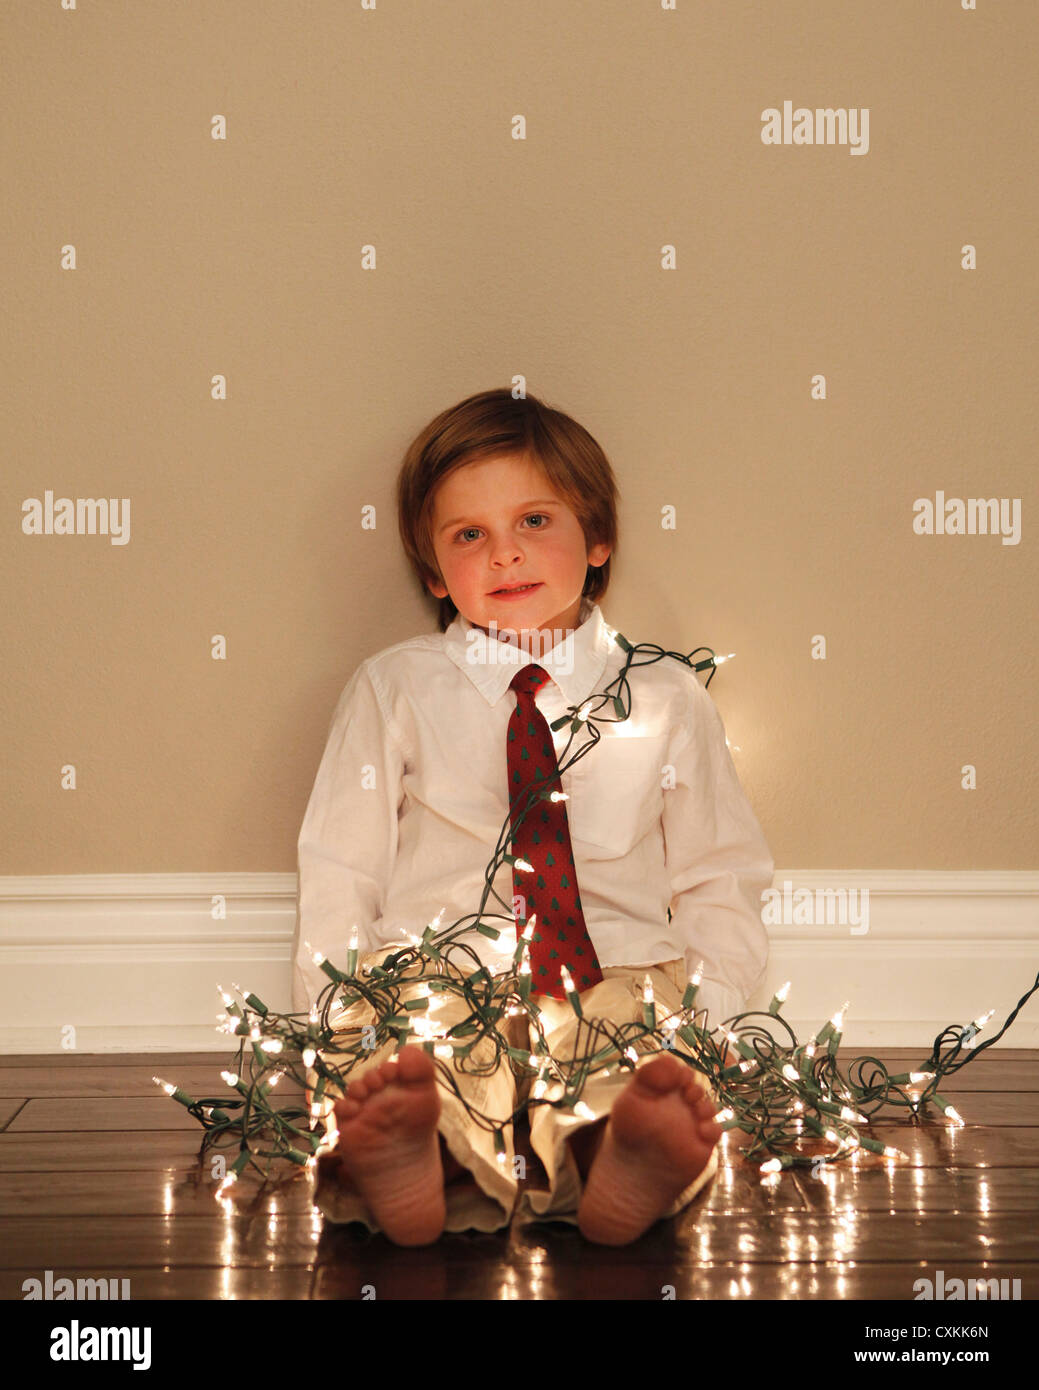 Kleiner Junge abgedeckt in Weihnachtsbeleuchtung Stockfoto